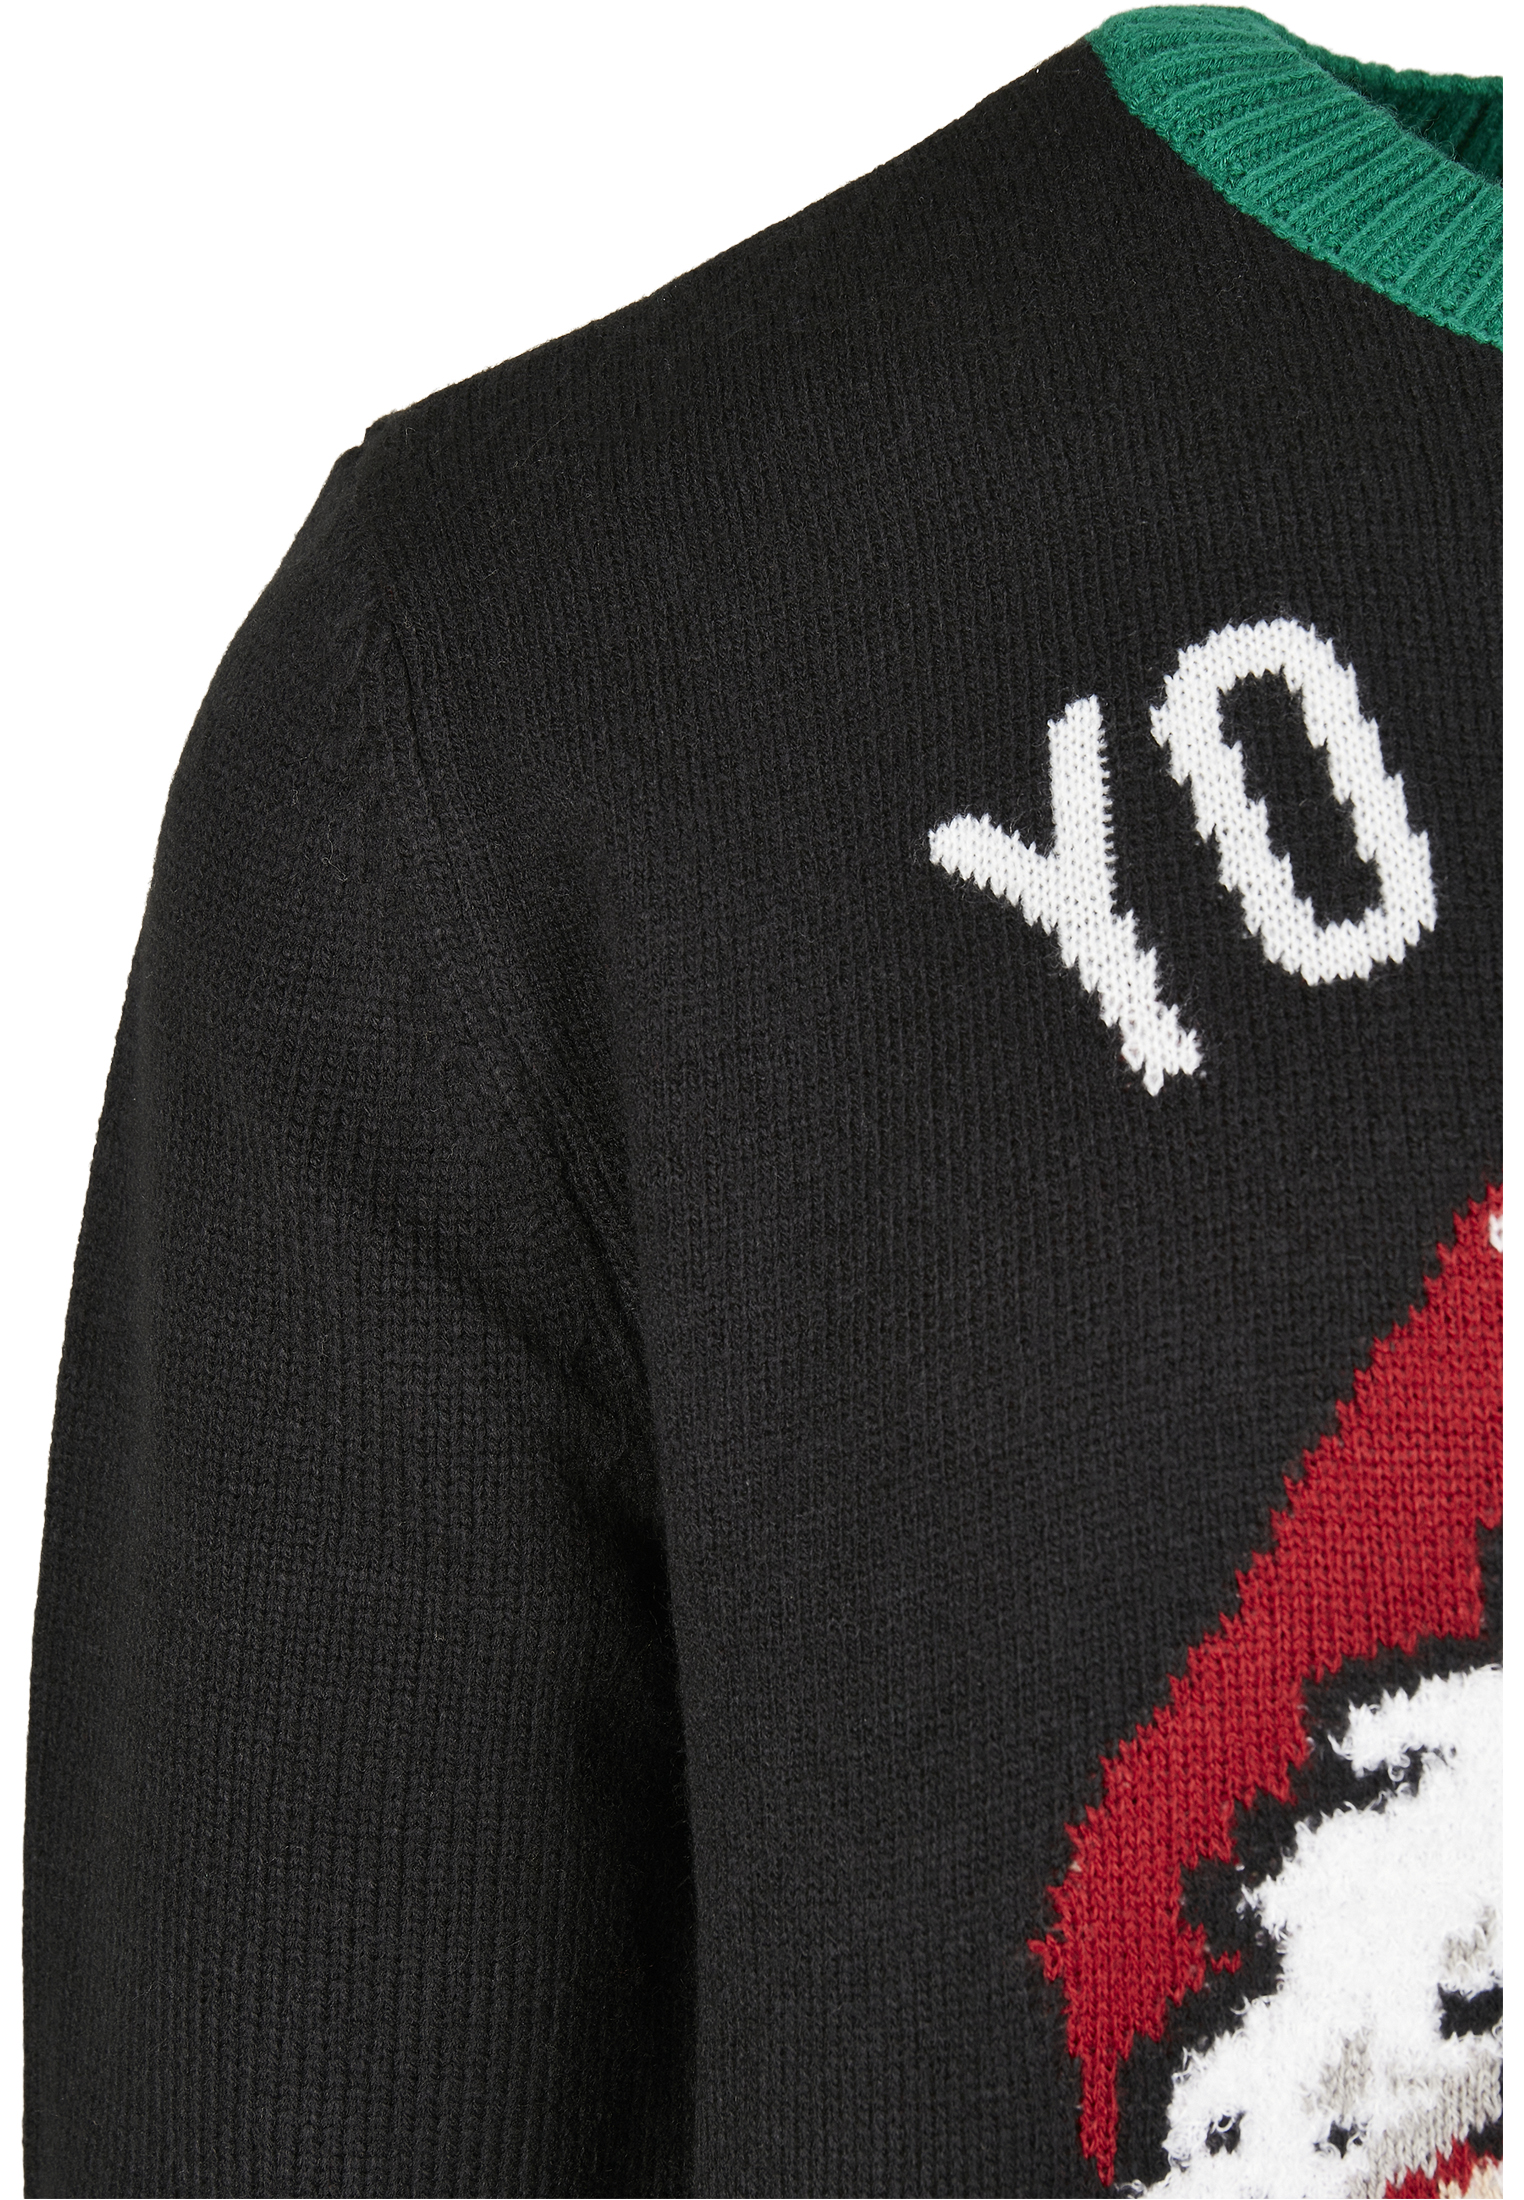 Crewnecks Ho Ho Ho Sweater in Farbe black